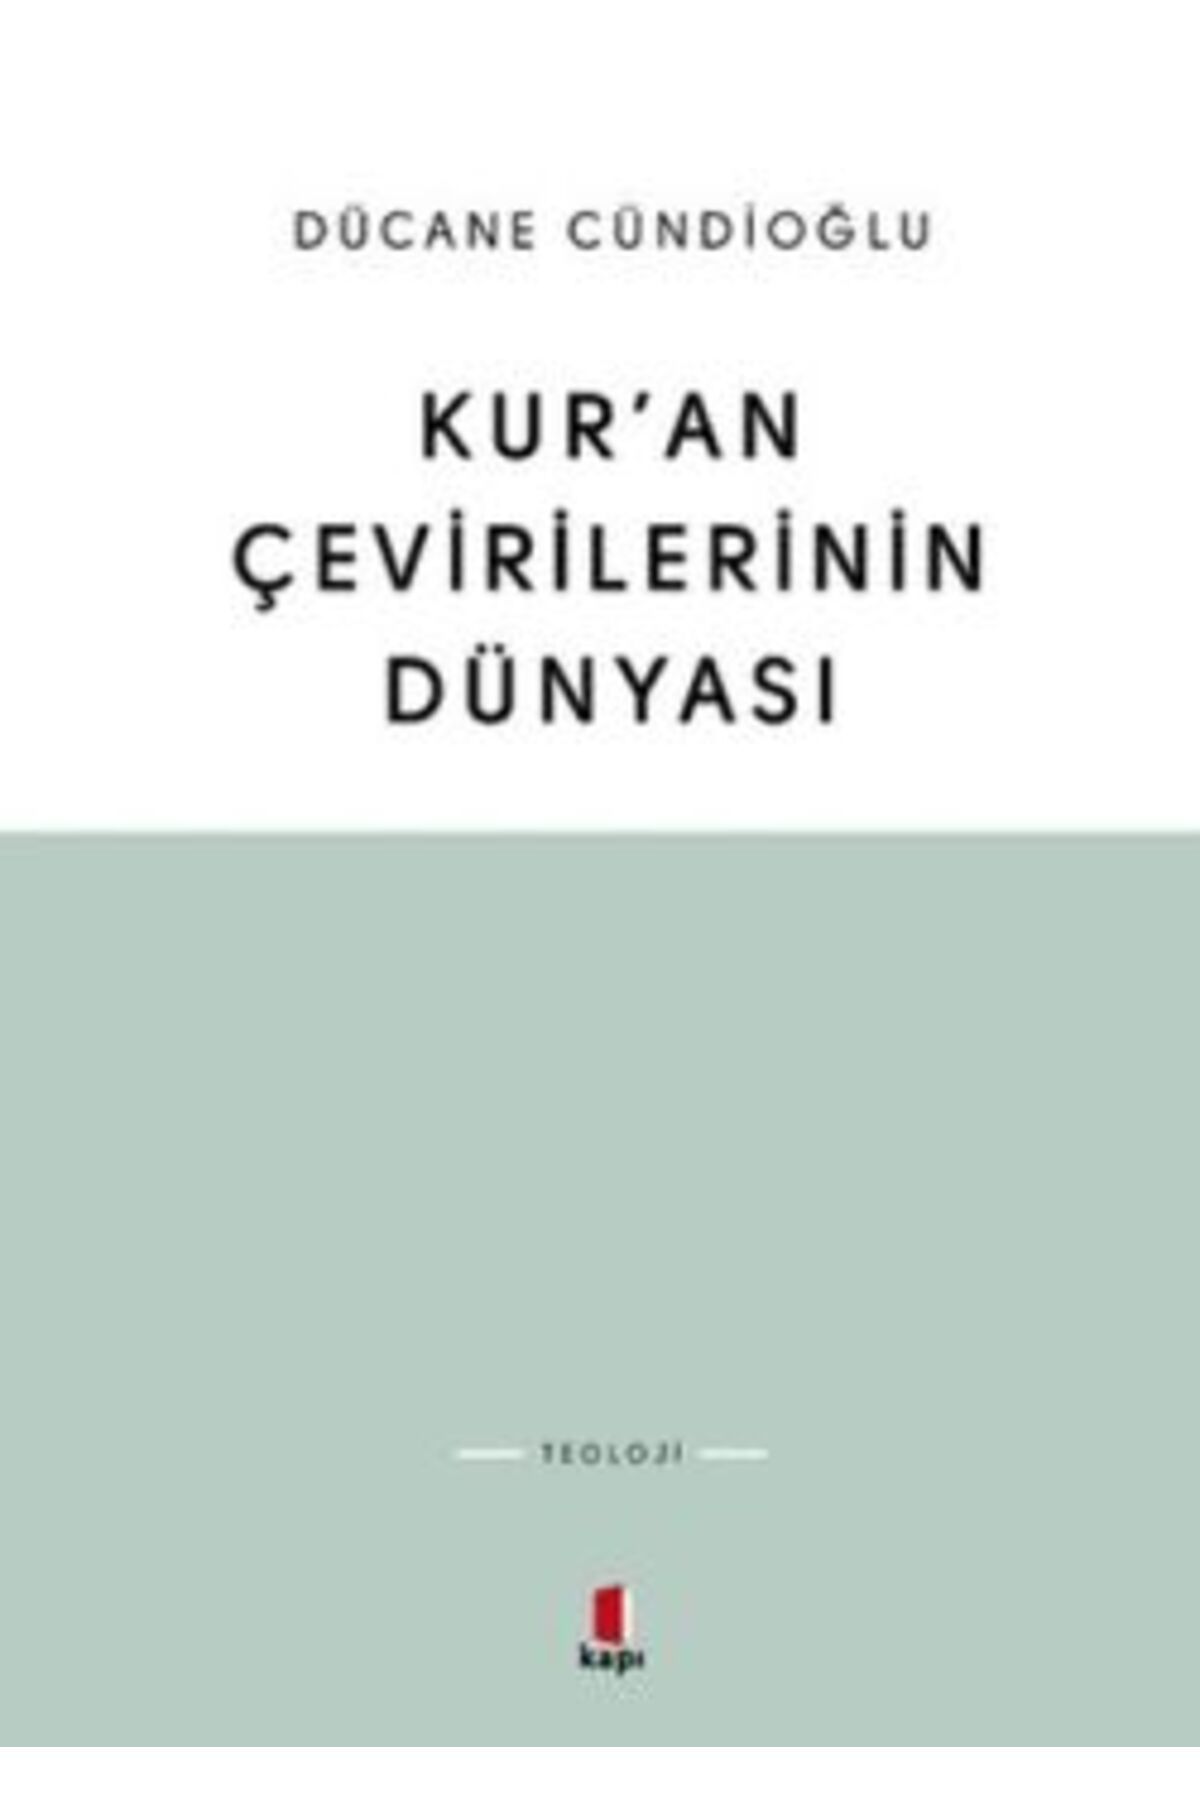 Kapı Yayınları Kur'an Çevirilerinin Dünyası kitabı - Dücane Cündioğlu - Kapı Yayınları